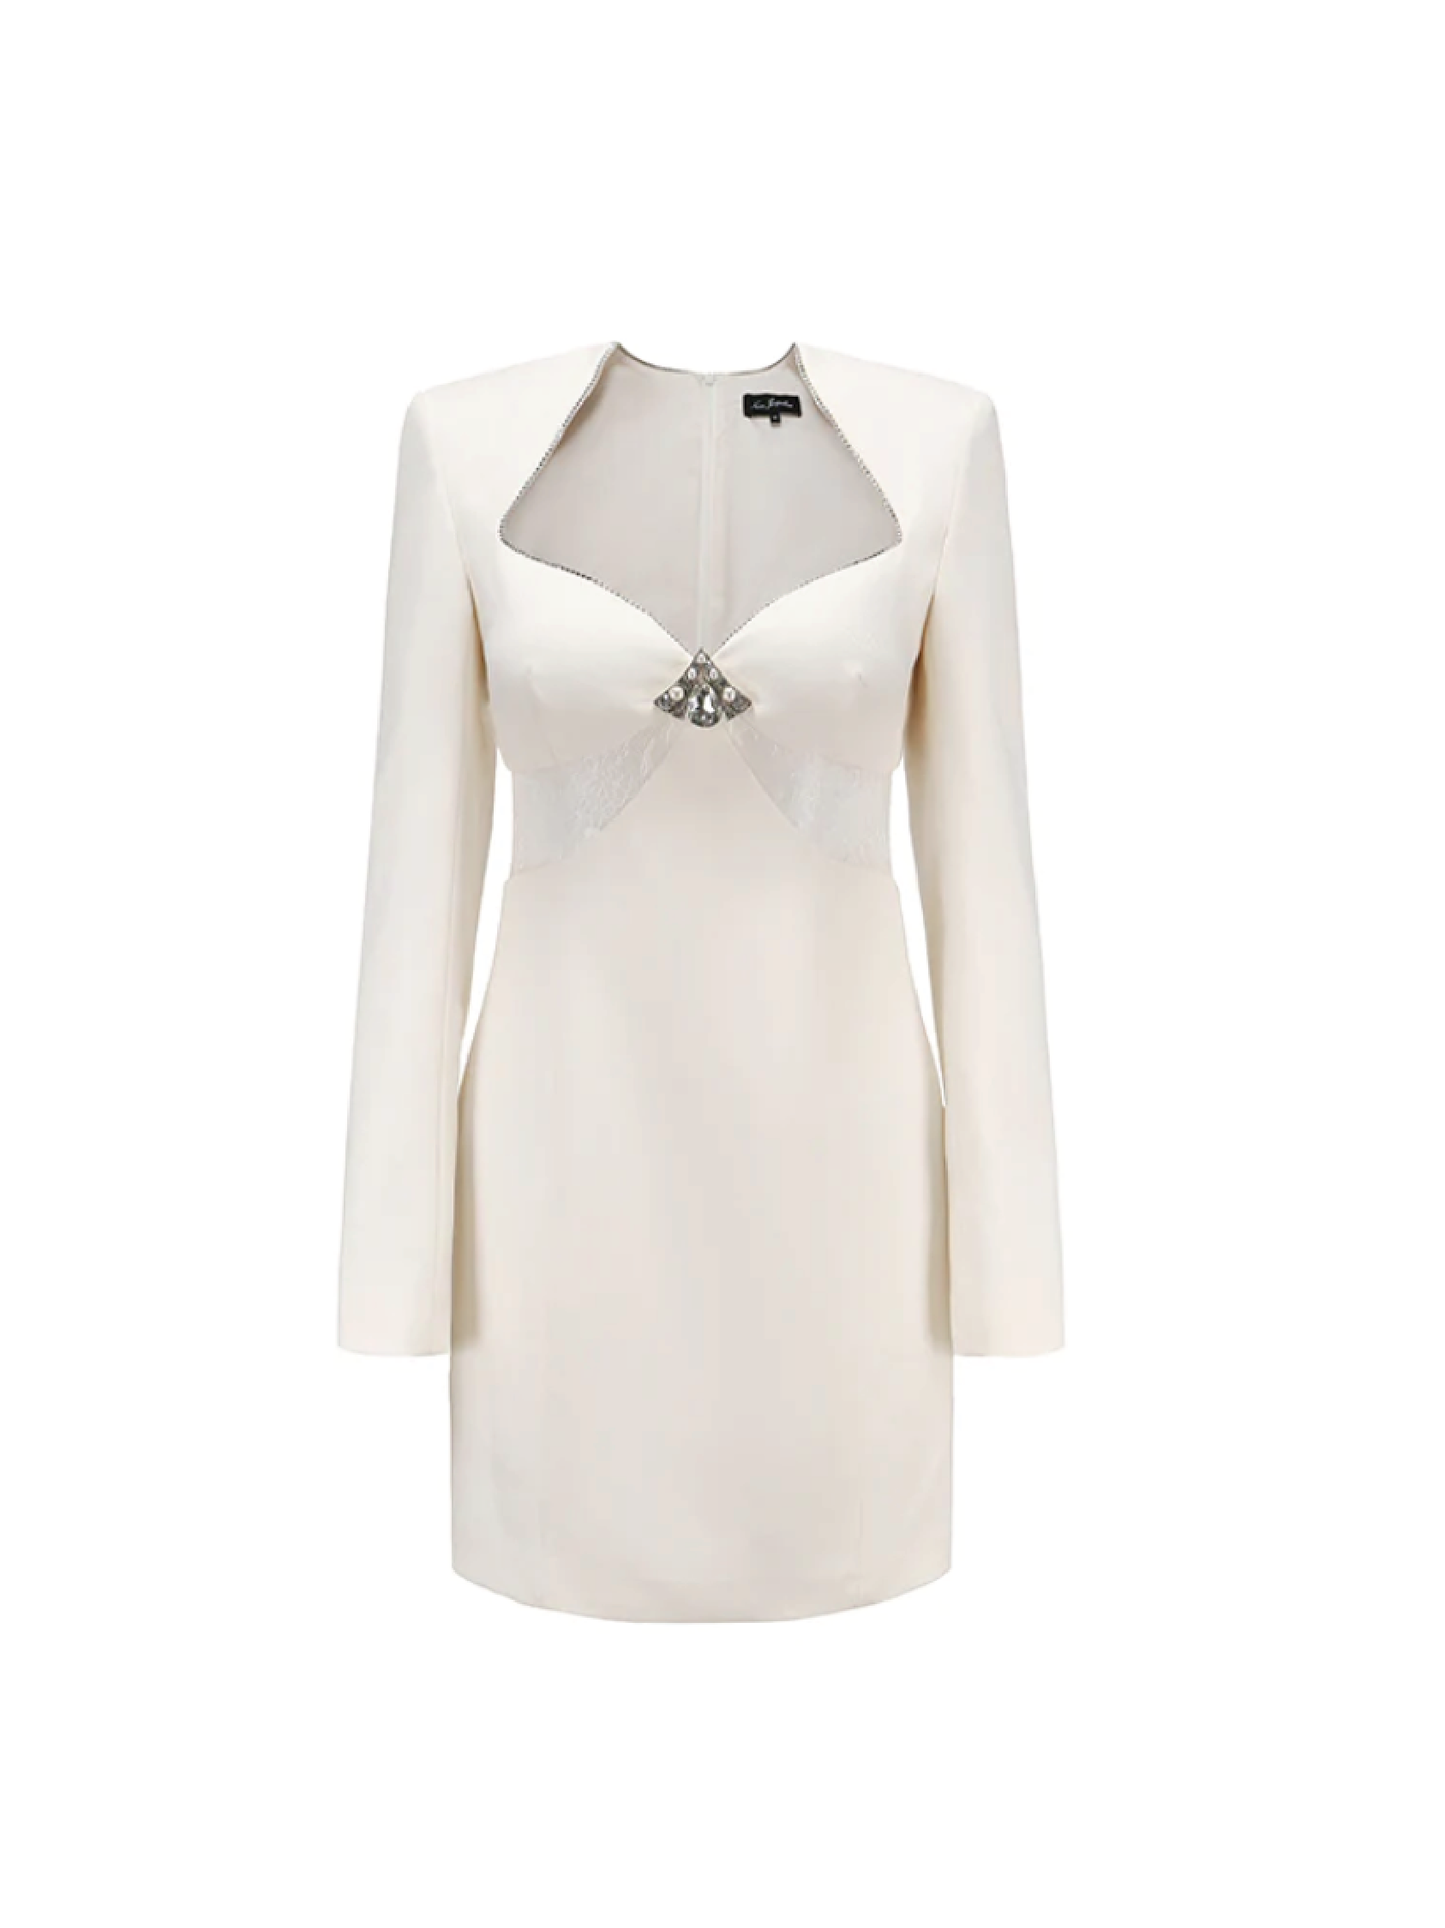 Marina Lace Dress (White)